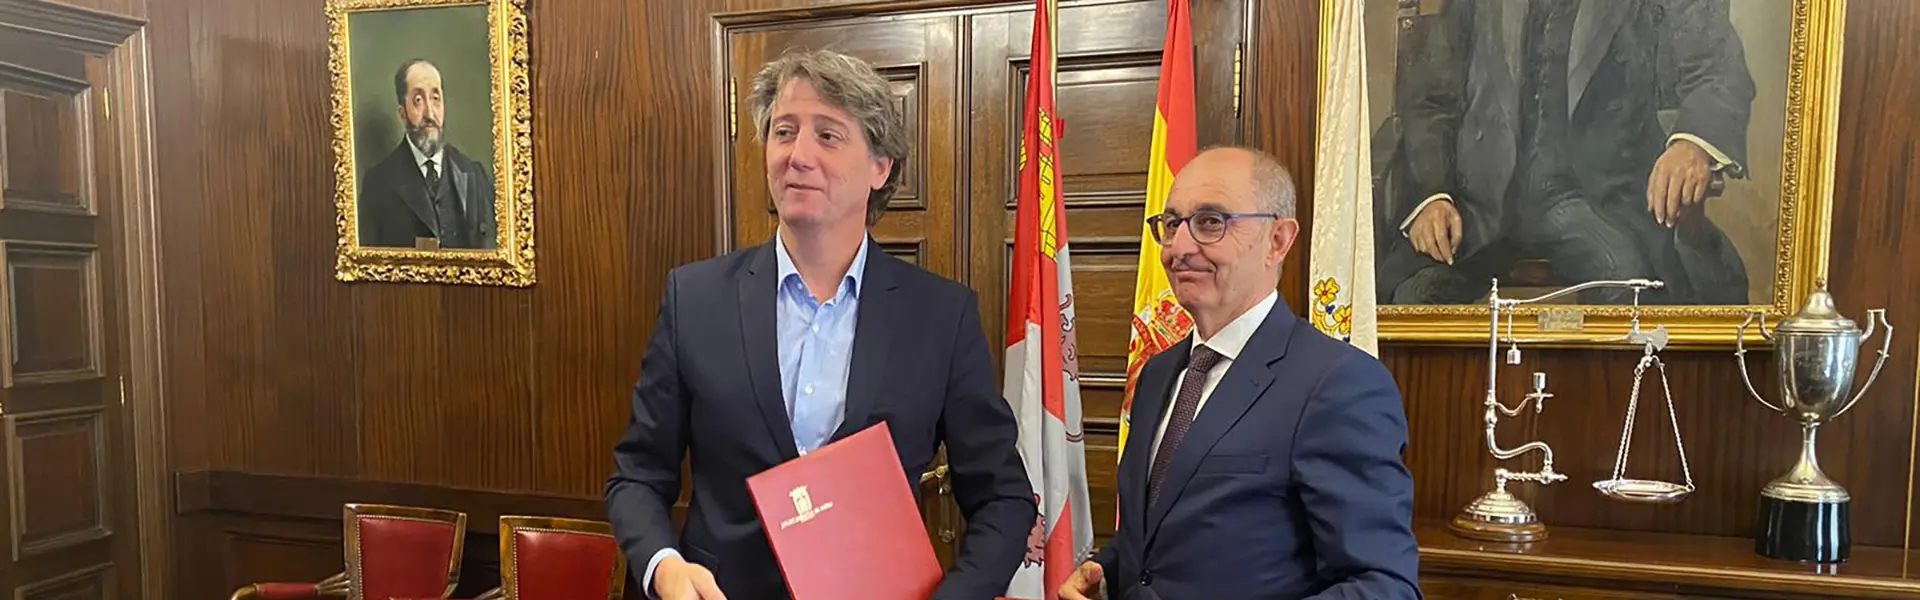 Iberaval y el Ayuntamiento de Soria facilitarán inversiones por 6 millones de euros a las pymes y autónomos ultimas noticias